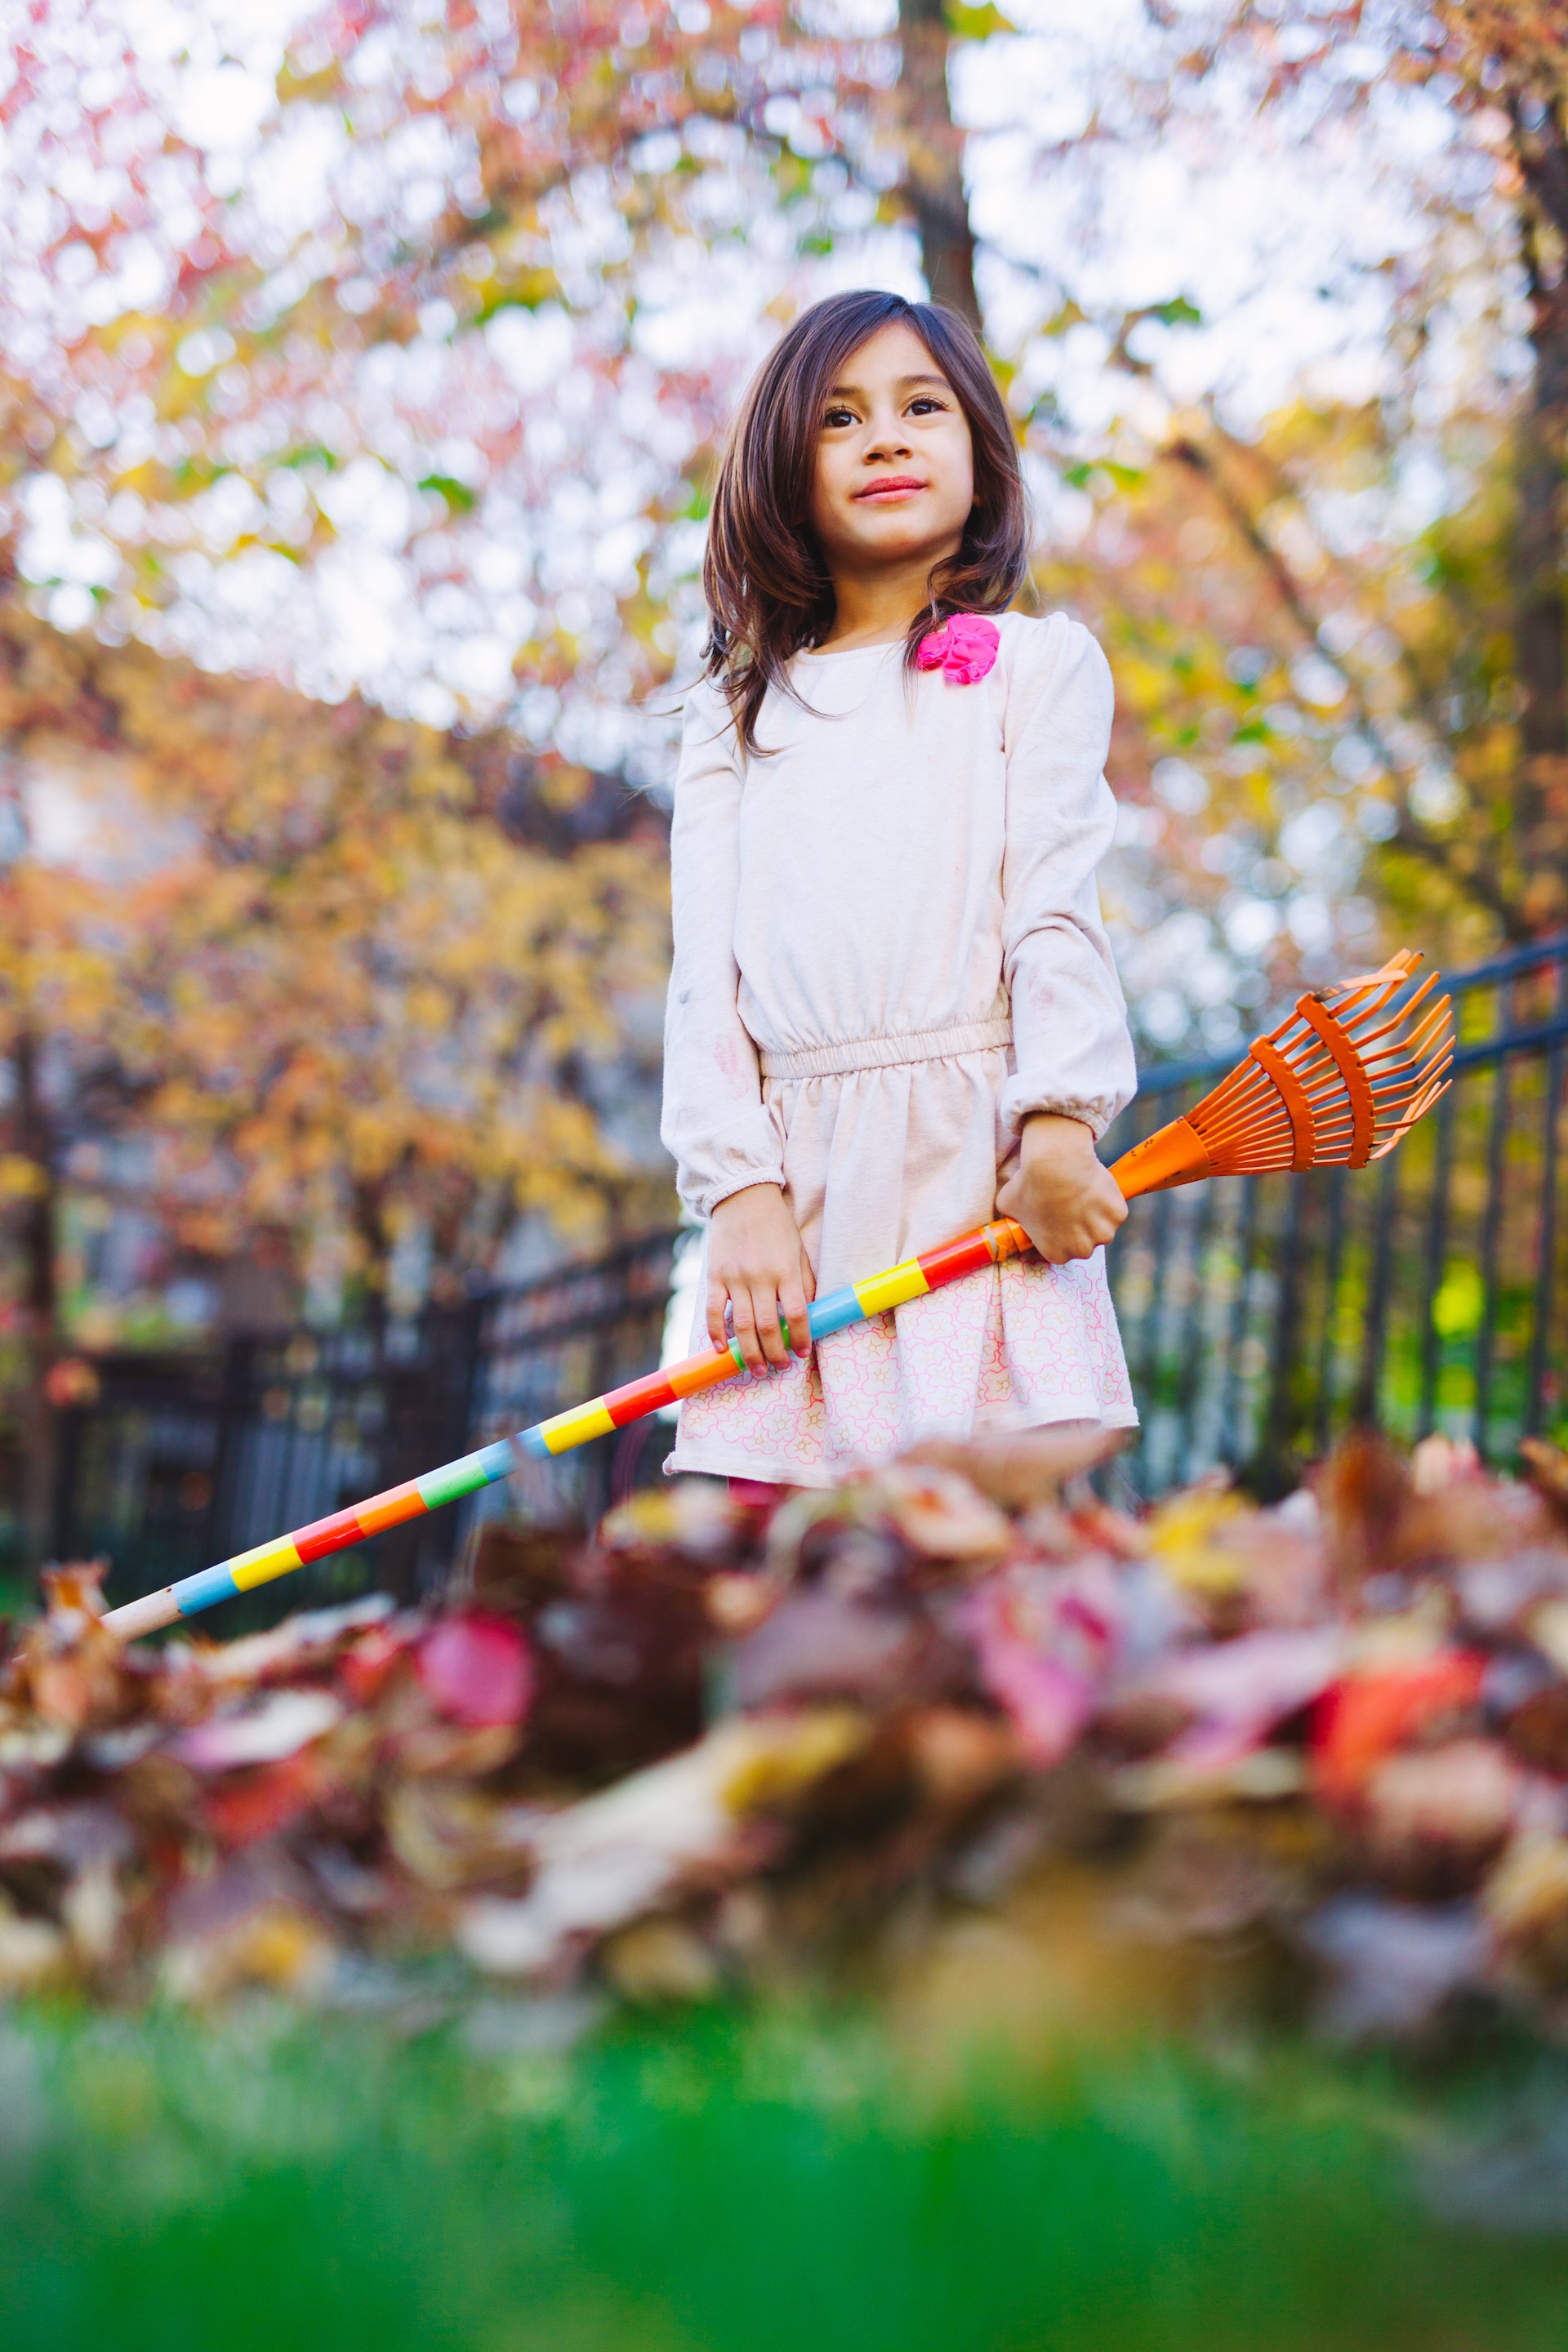 Herbstlicher Garten mit Kind
					©Joseph Gonzalez | unsplash
				